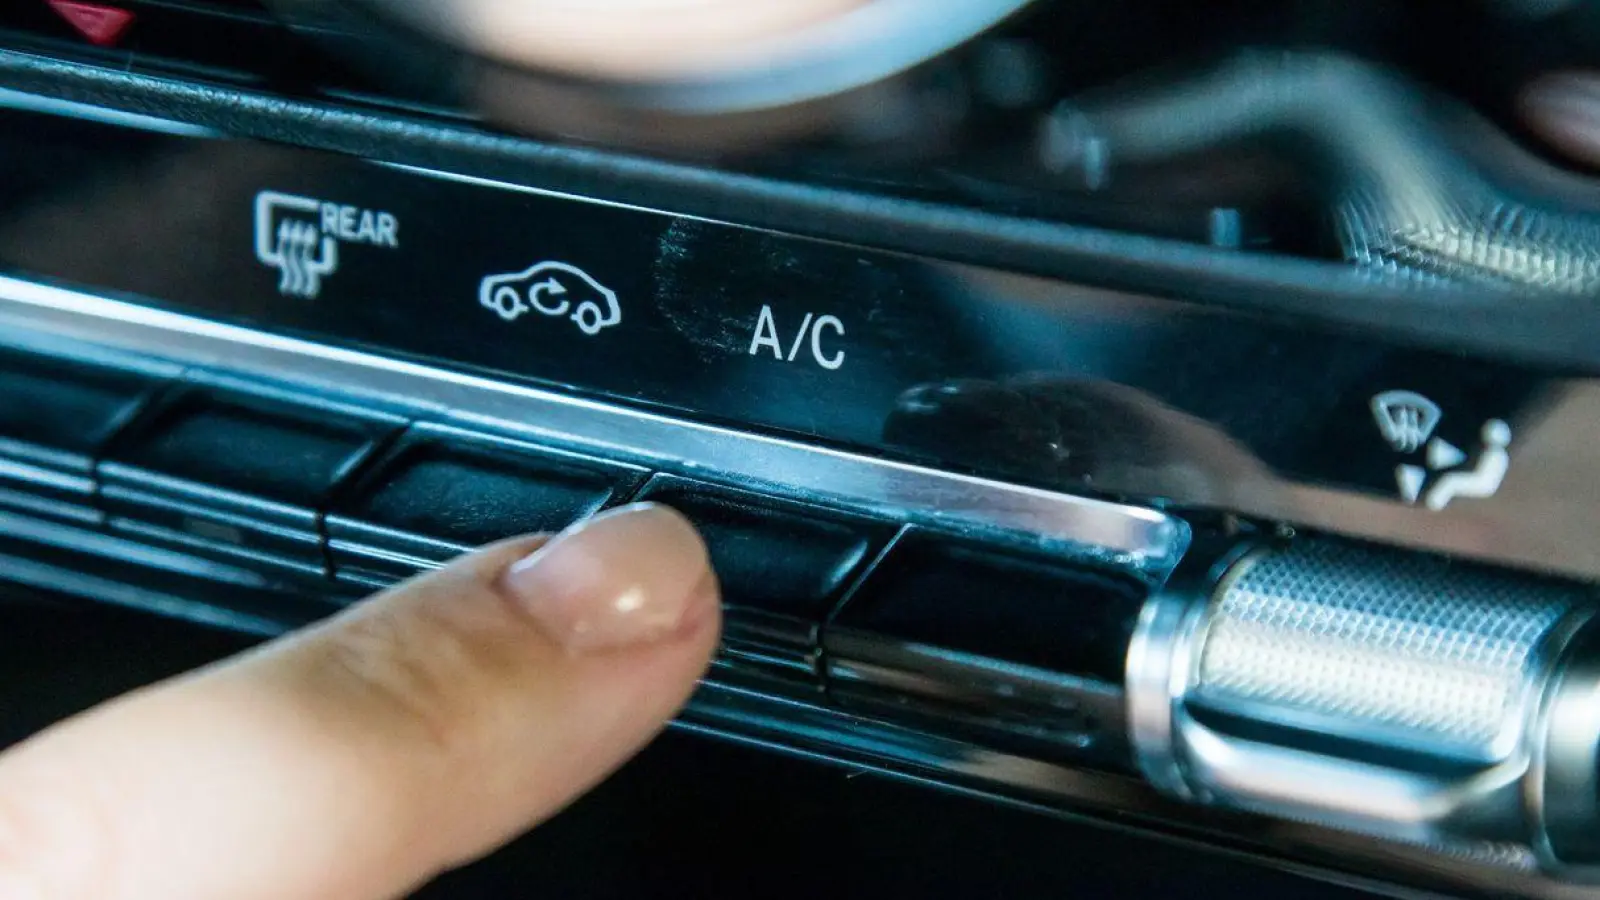 Unangenehme Gerüche in der Auto-Klimaanlage können auf Schimmel am Innenraumfilter hinweisen. (Foto: Christin Klose/dpa-tmn/dpa)